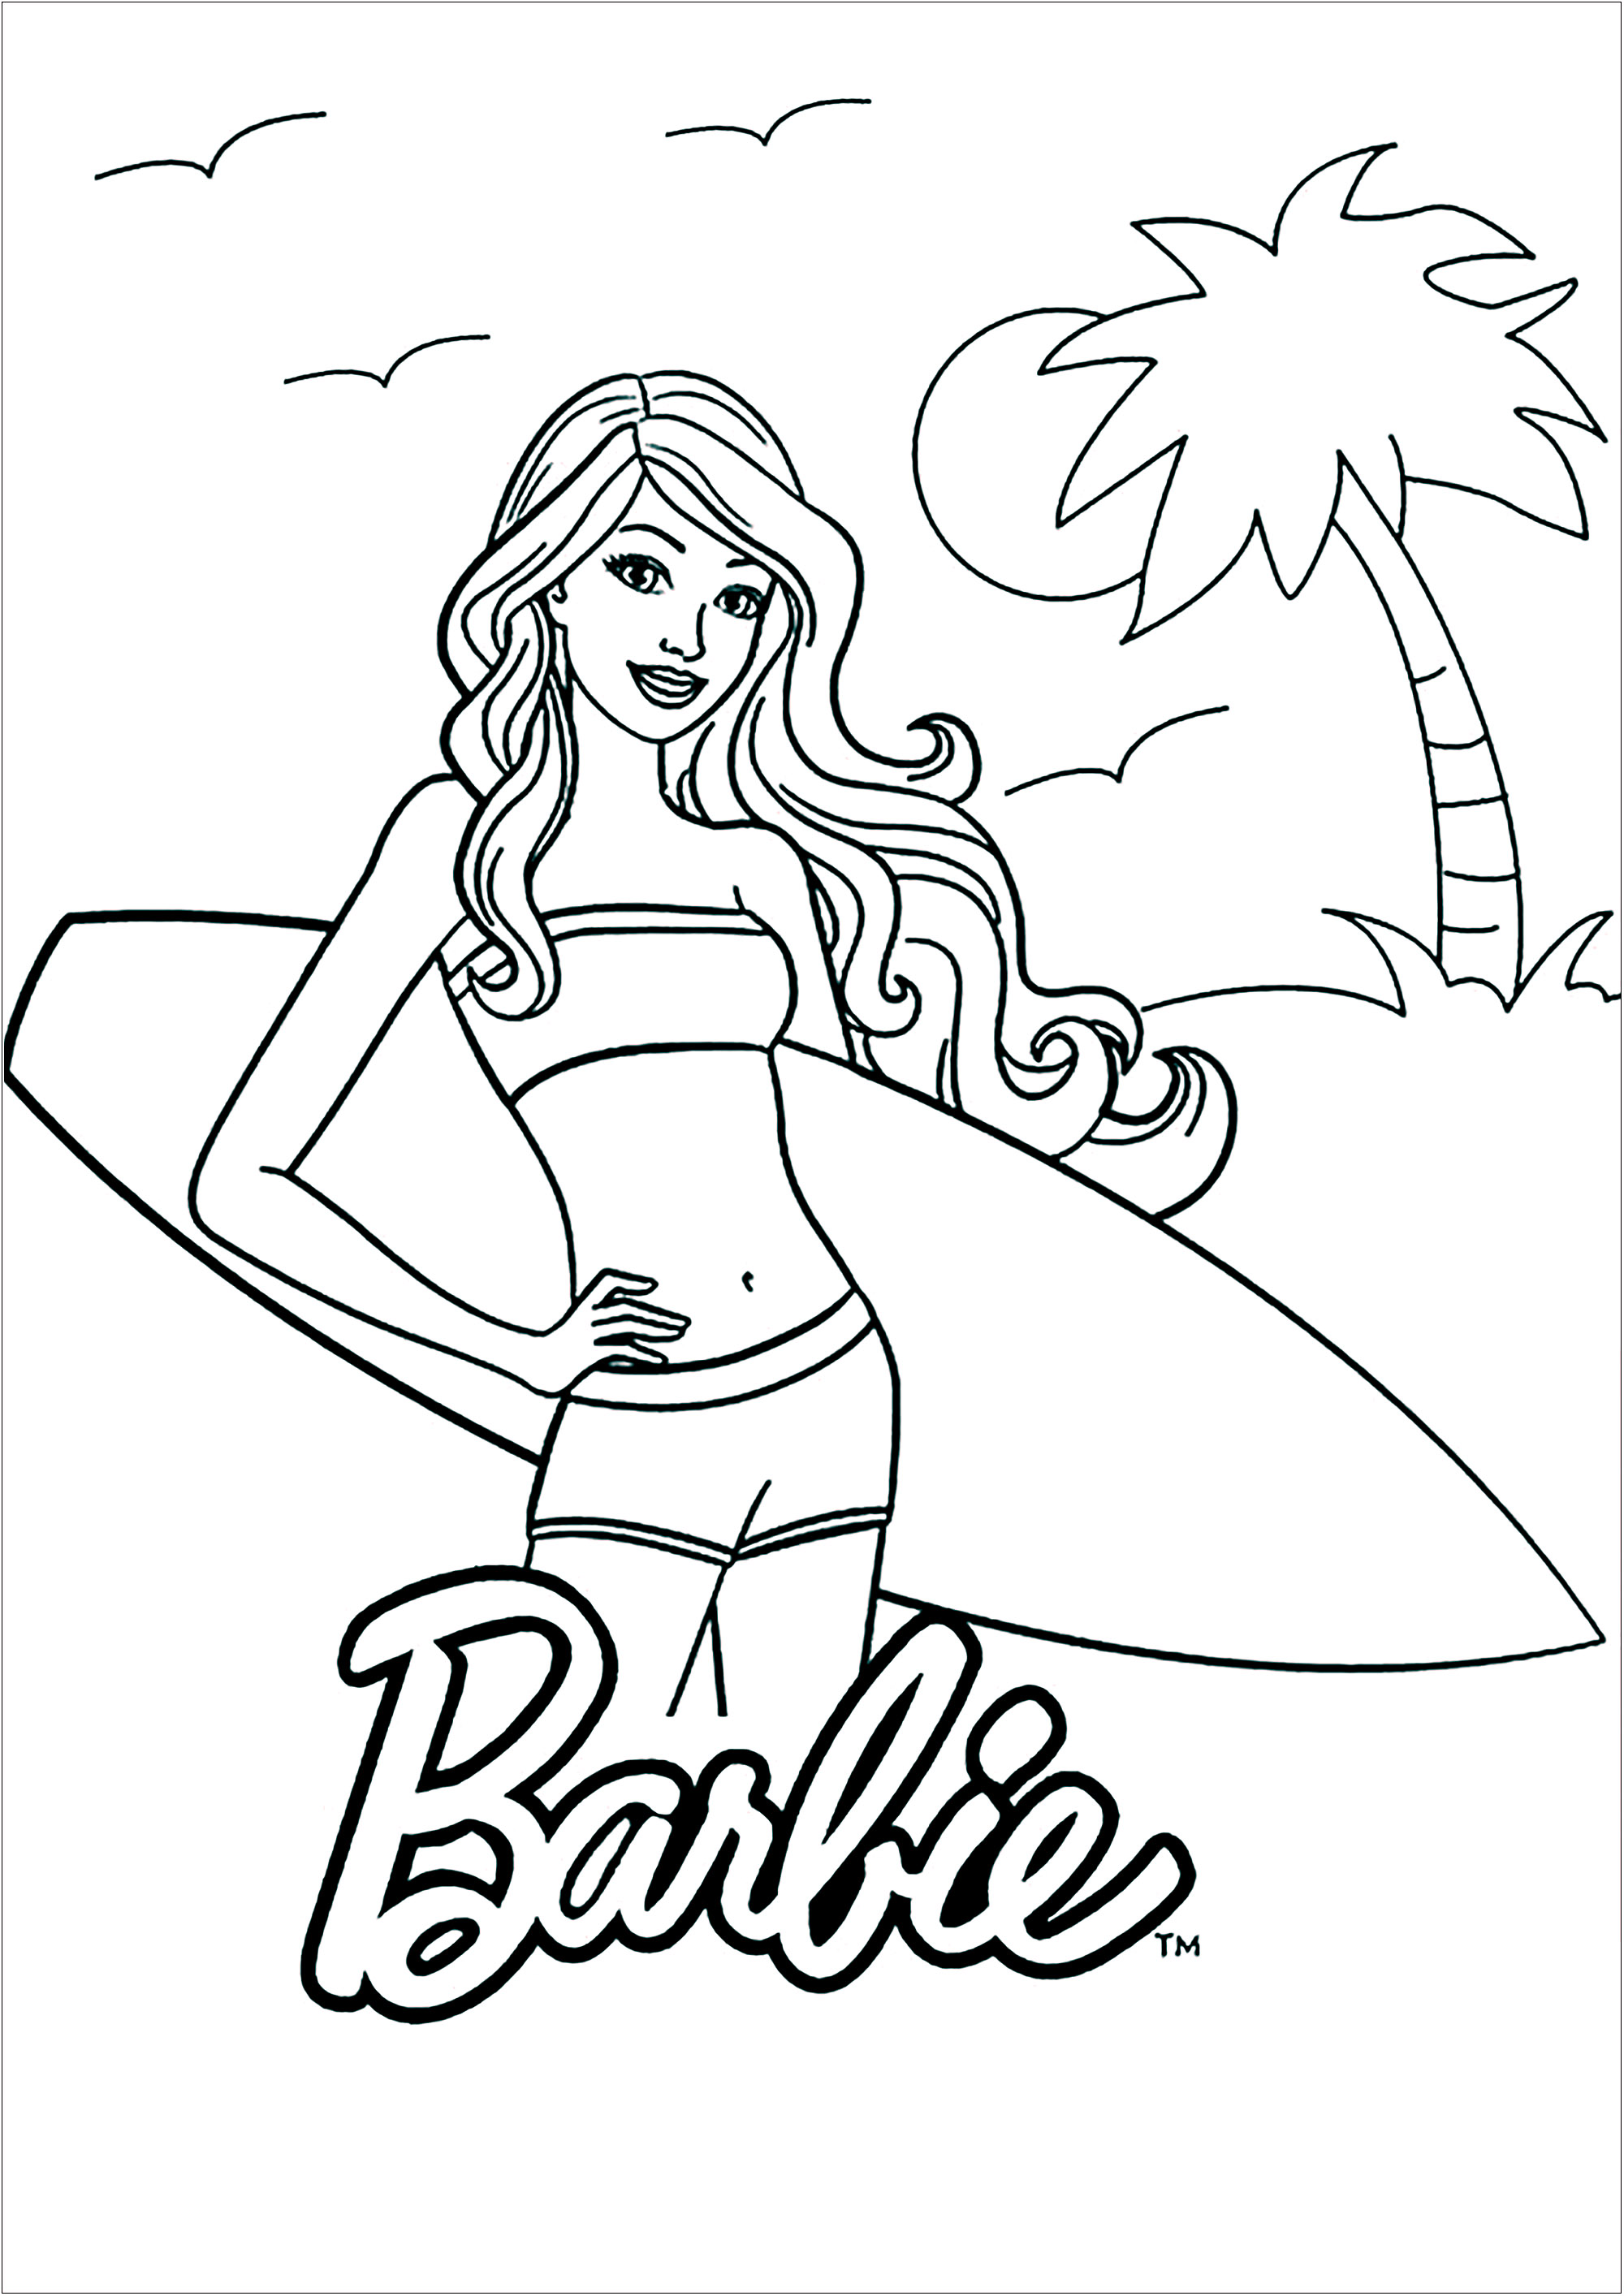 Barbie pronta para surfar numa bela praia. Coloração simples com poucos pormenores